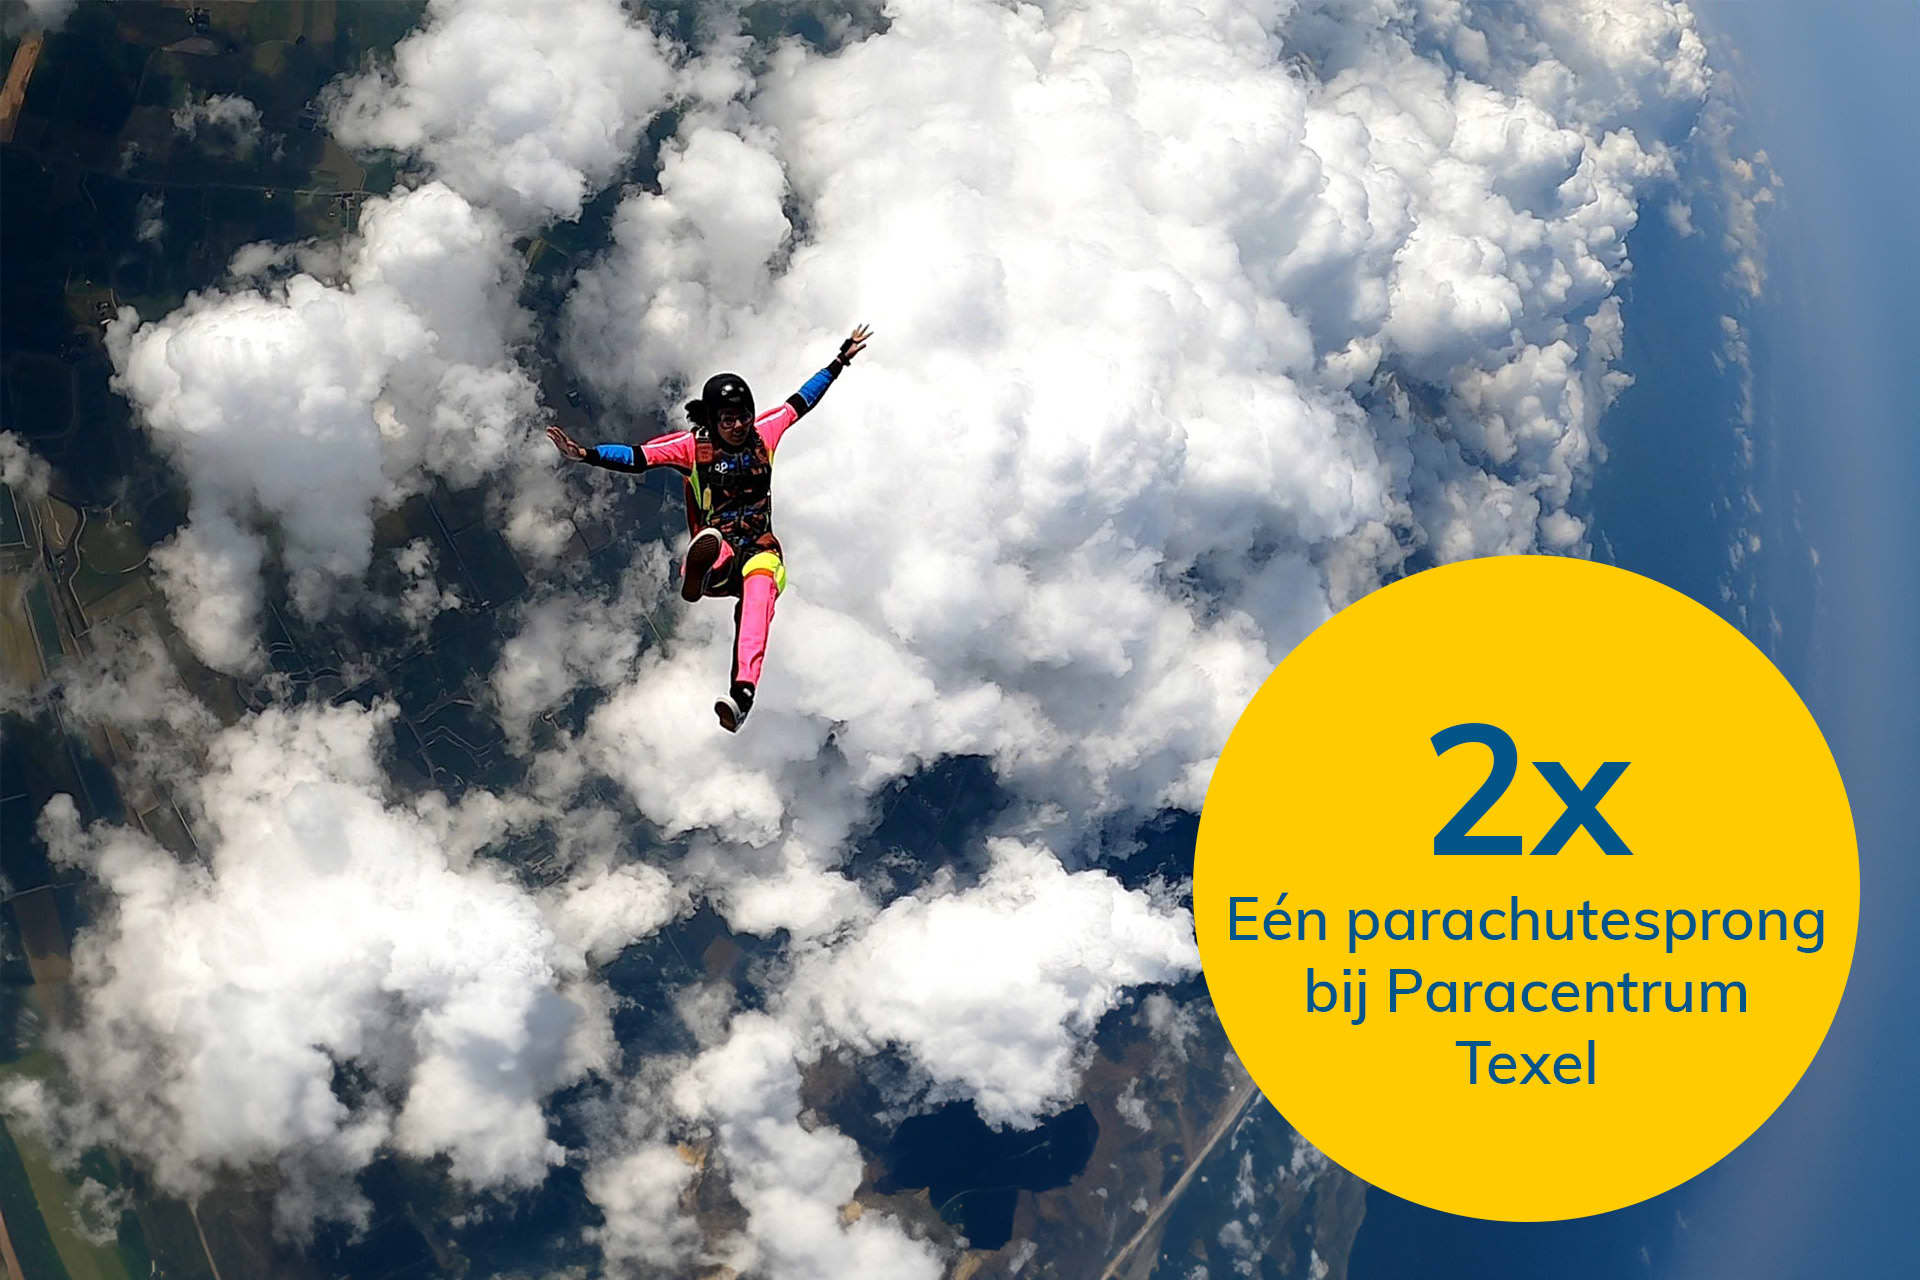 NL_Parachutesprong